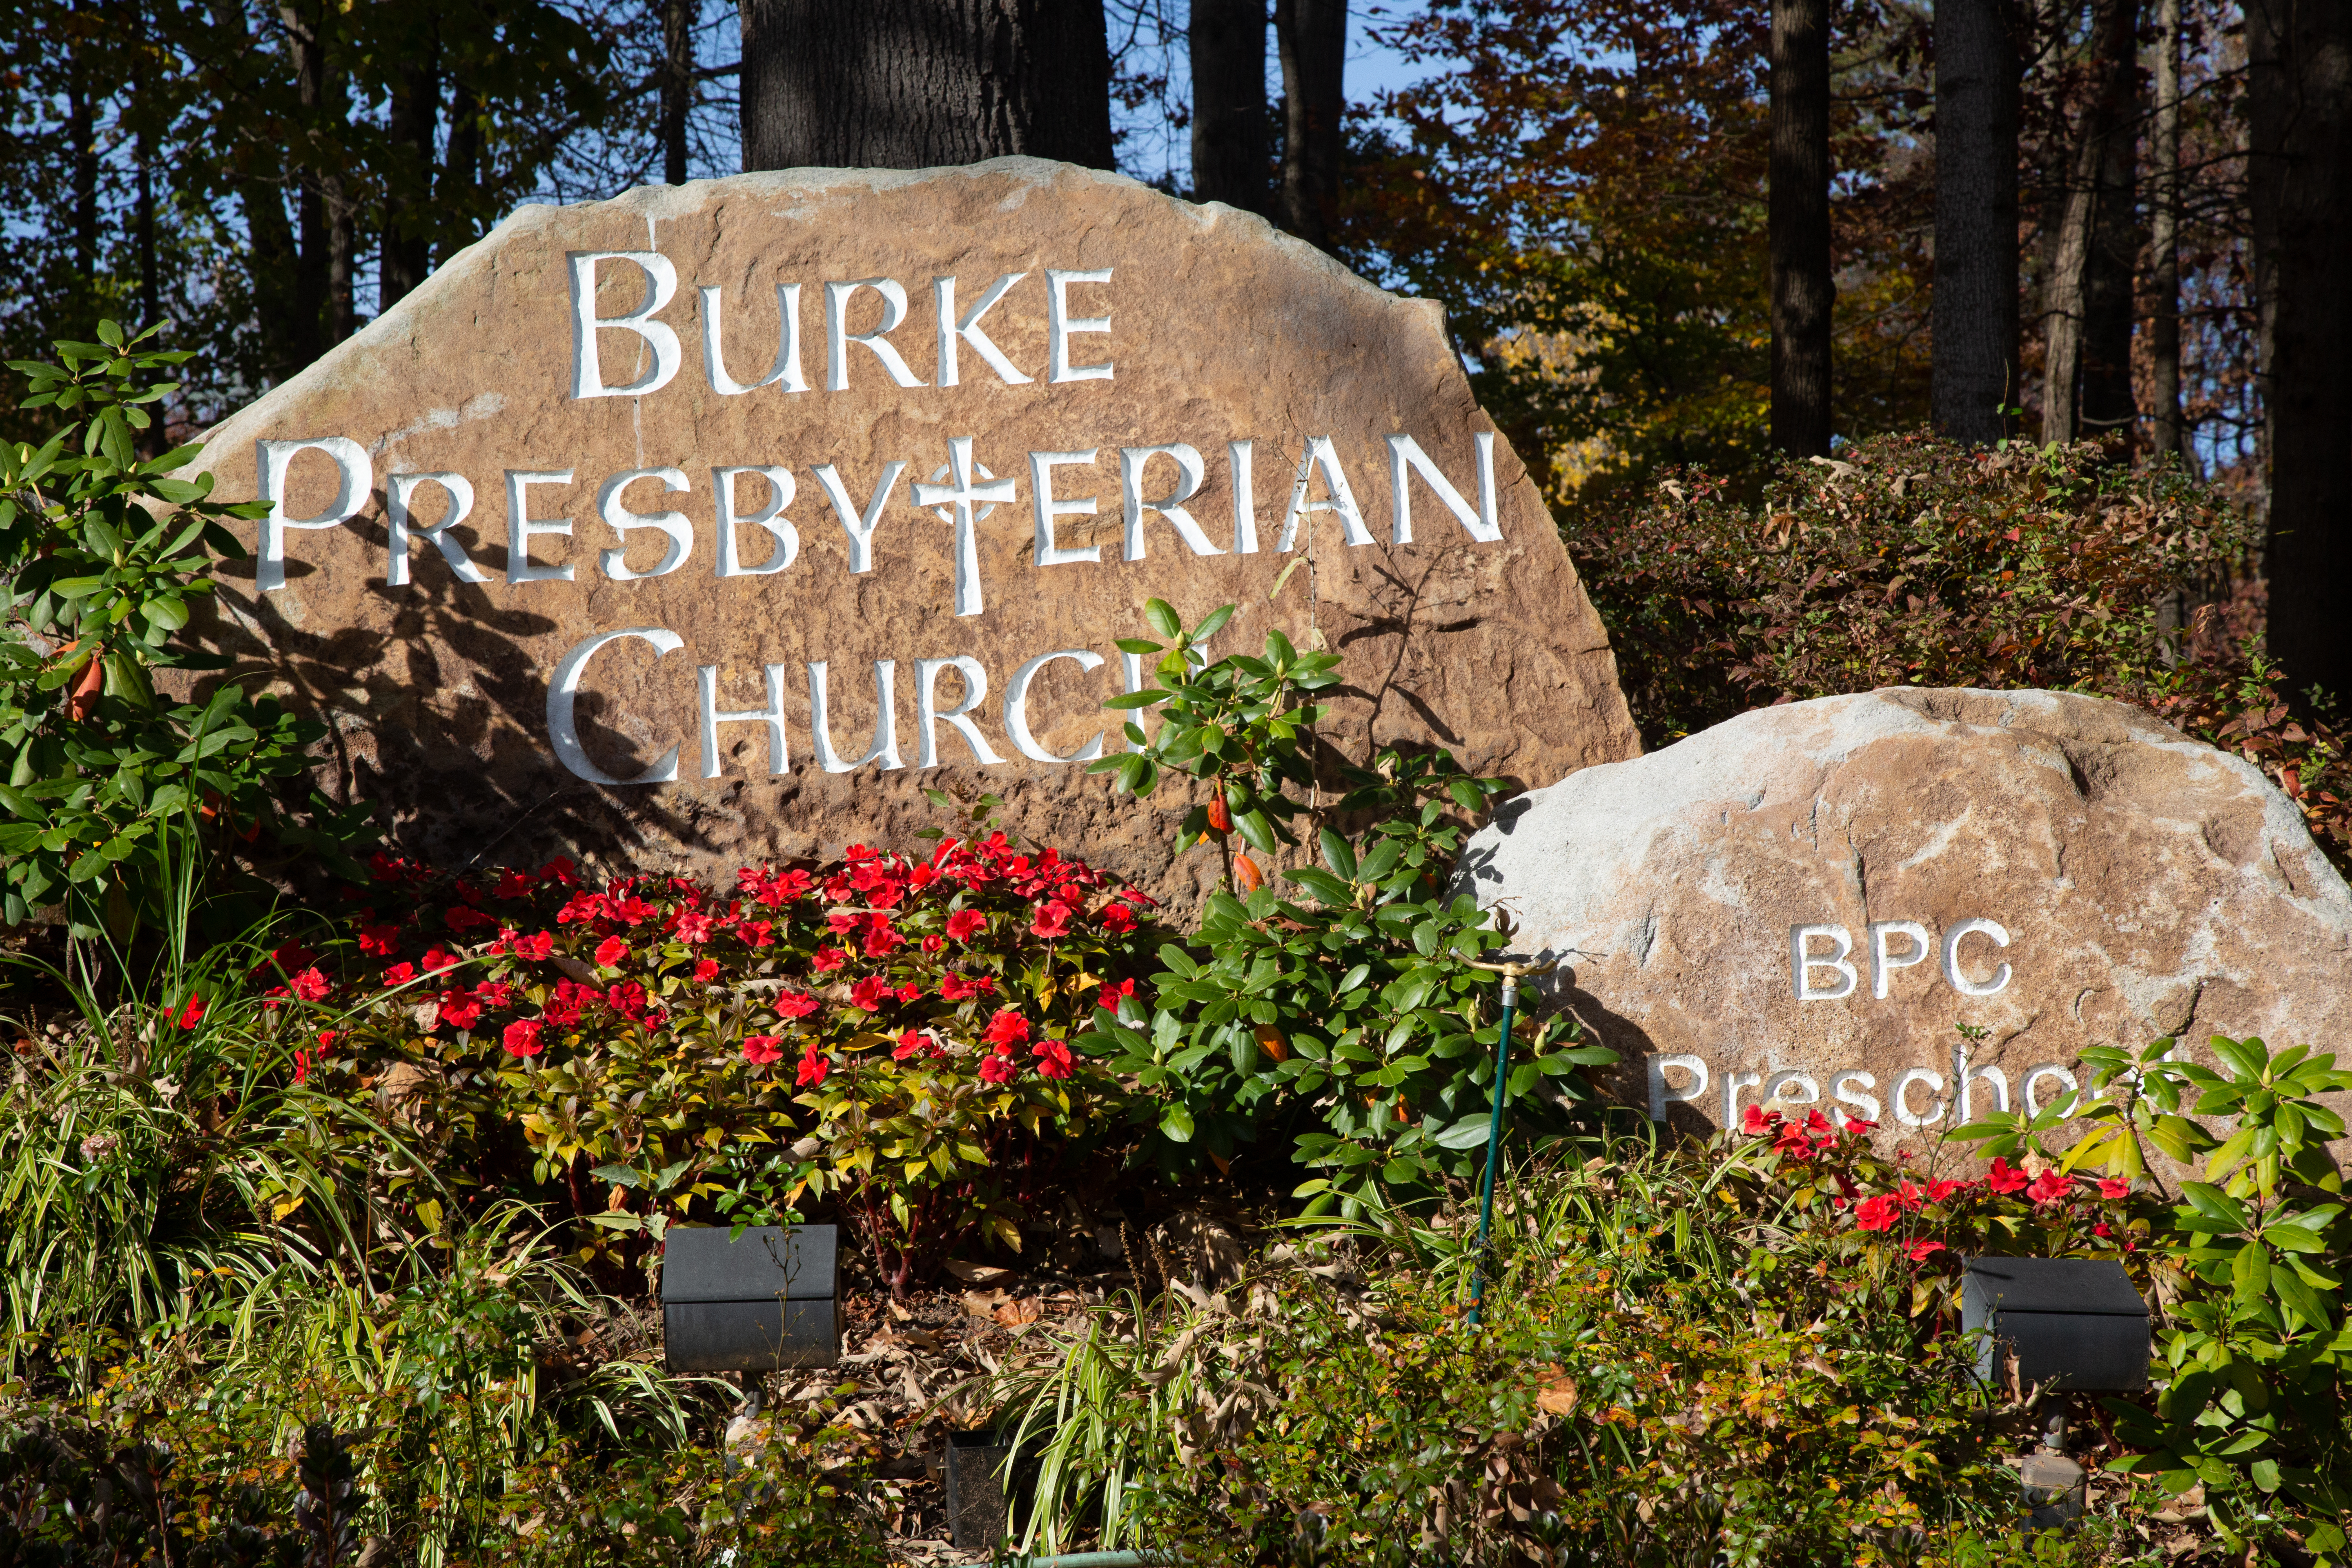 Burke Presbyterian Church. BPC Preschool